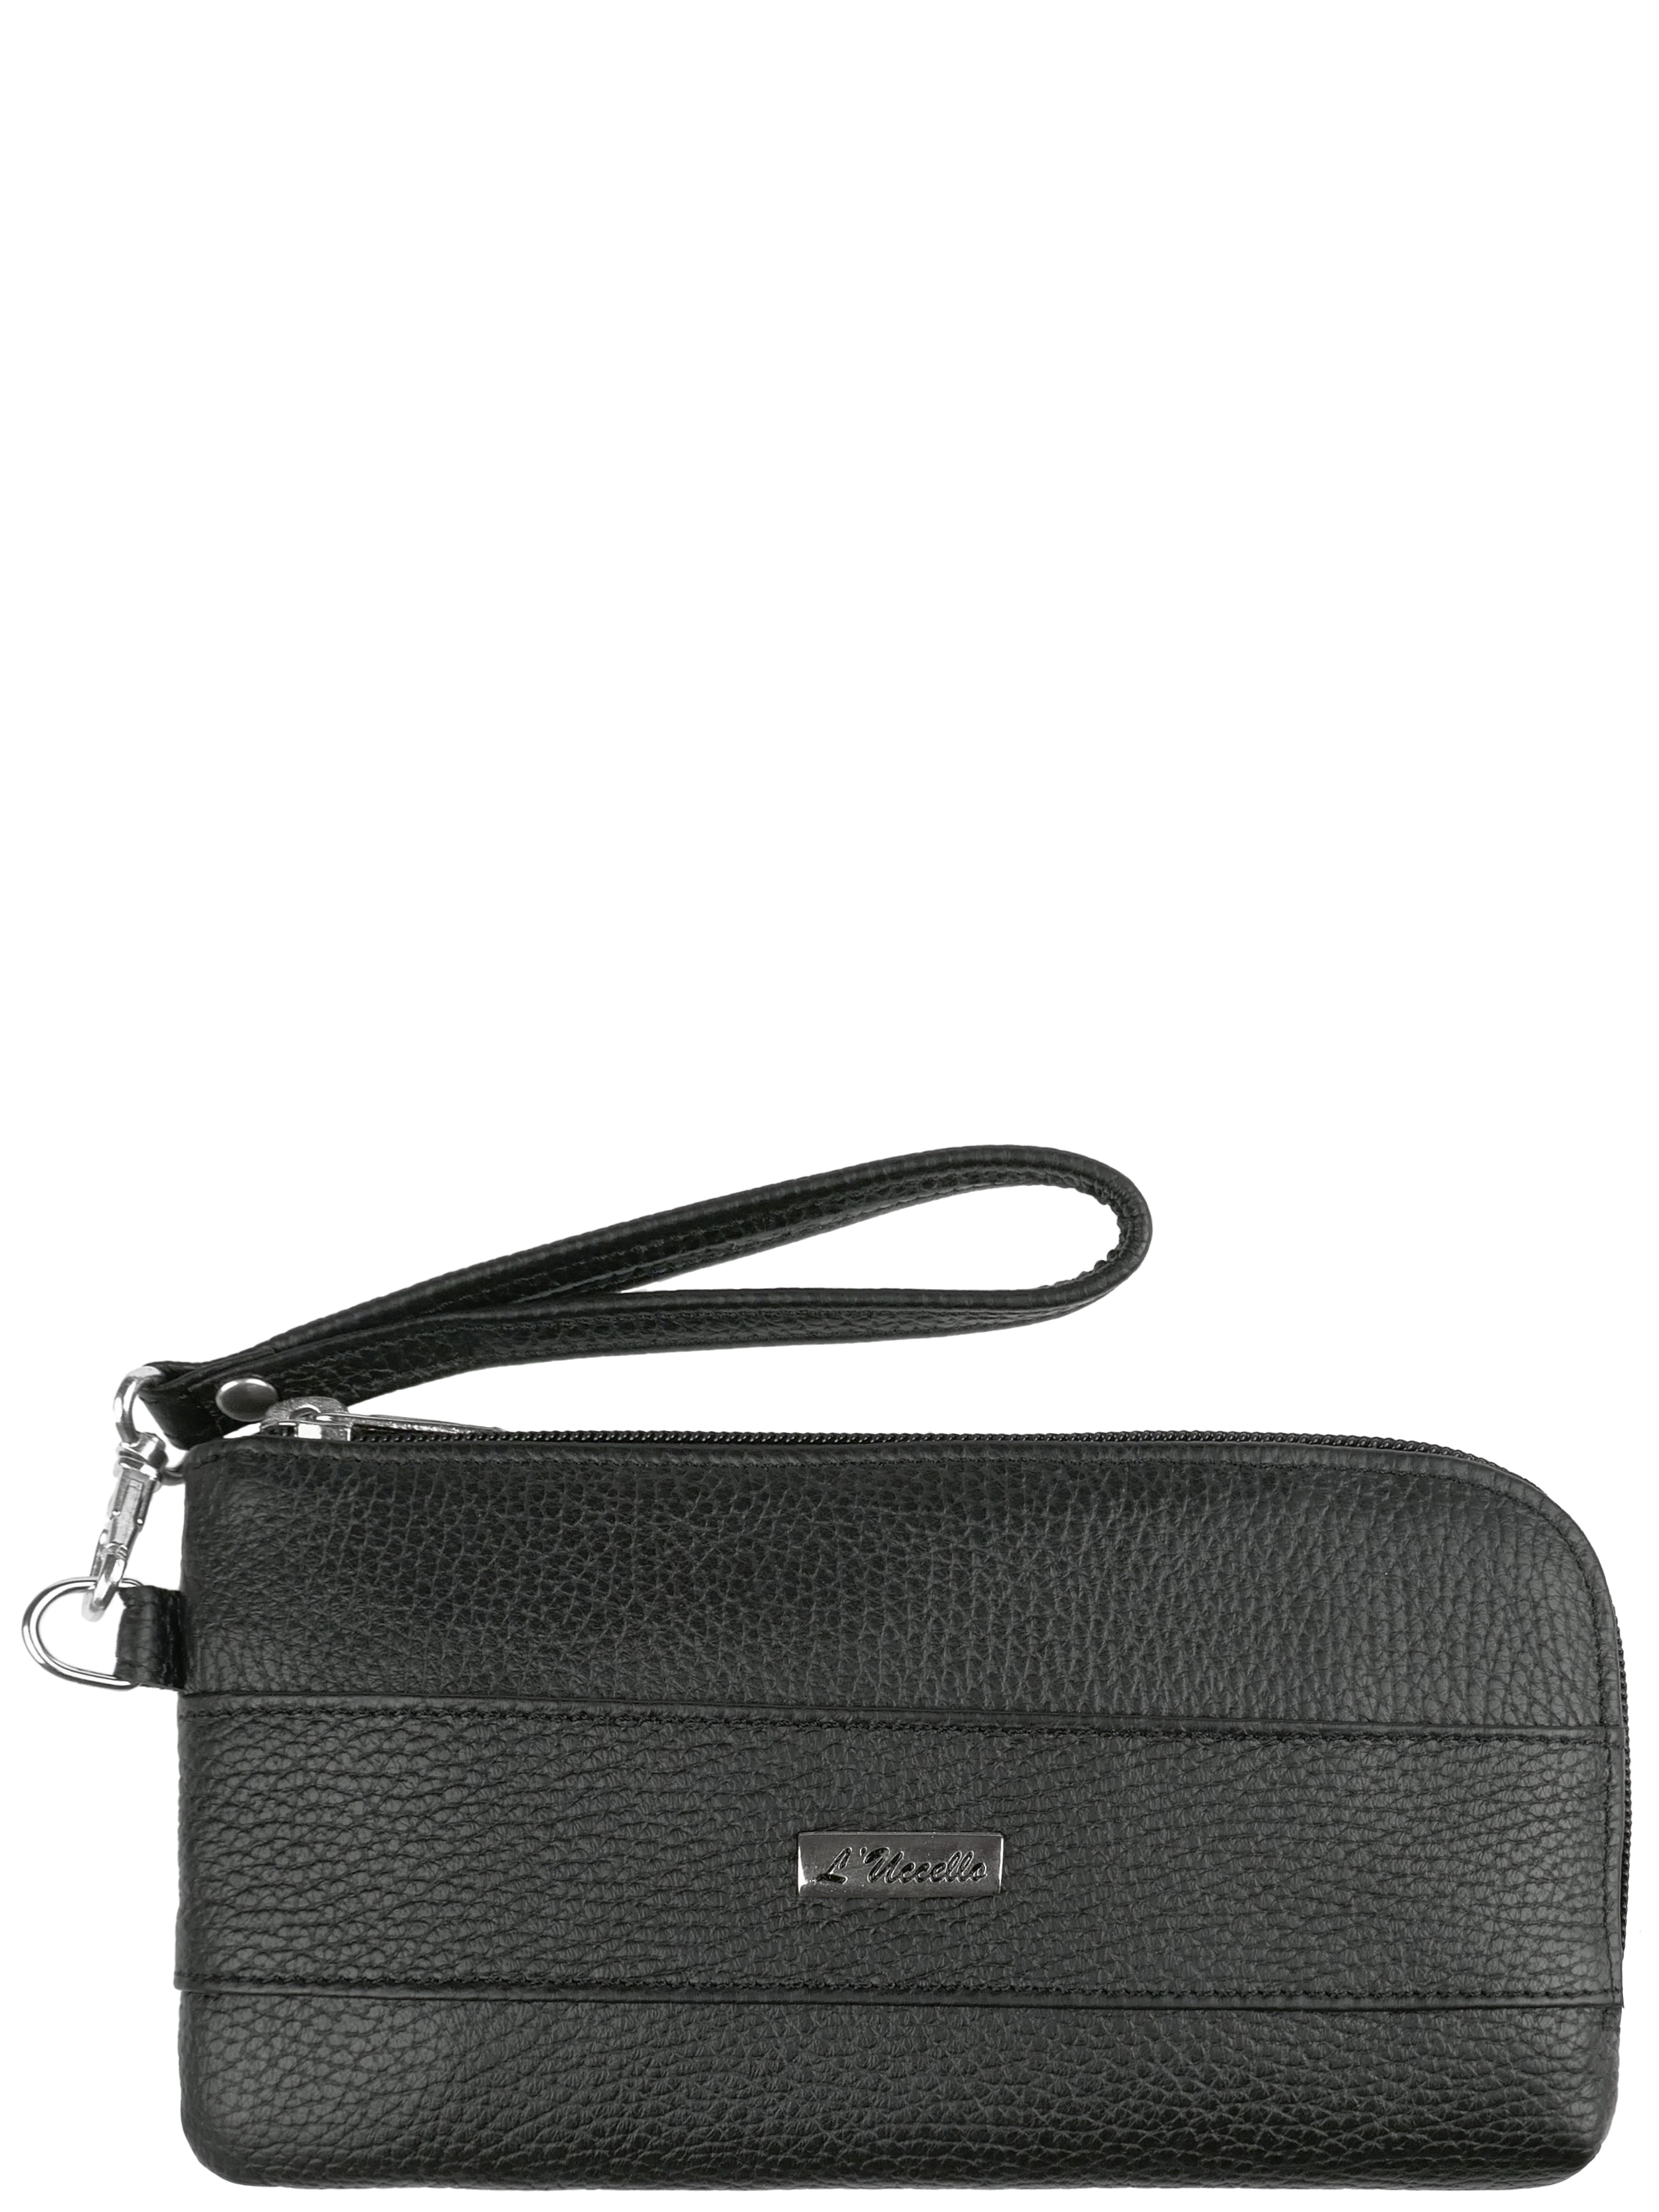 Комплект (кошелек+сумка) женский L'Uccello 1544, черный